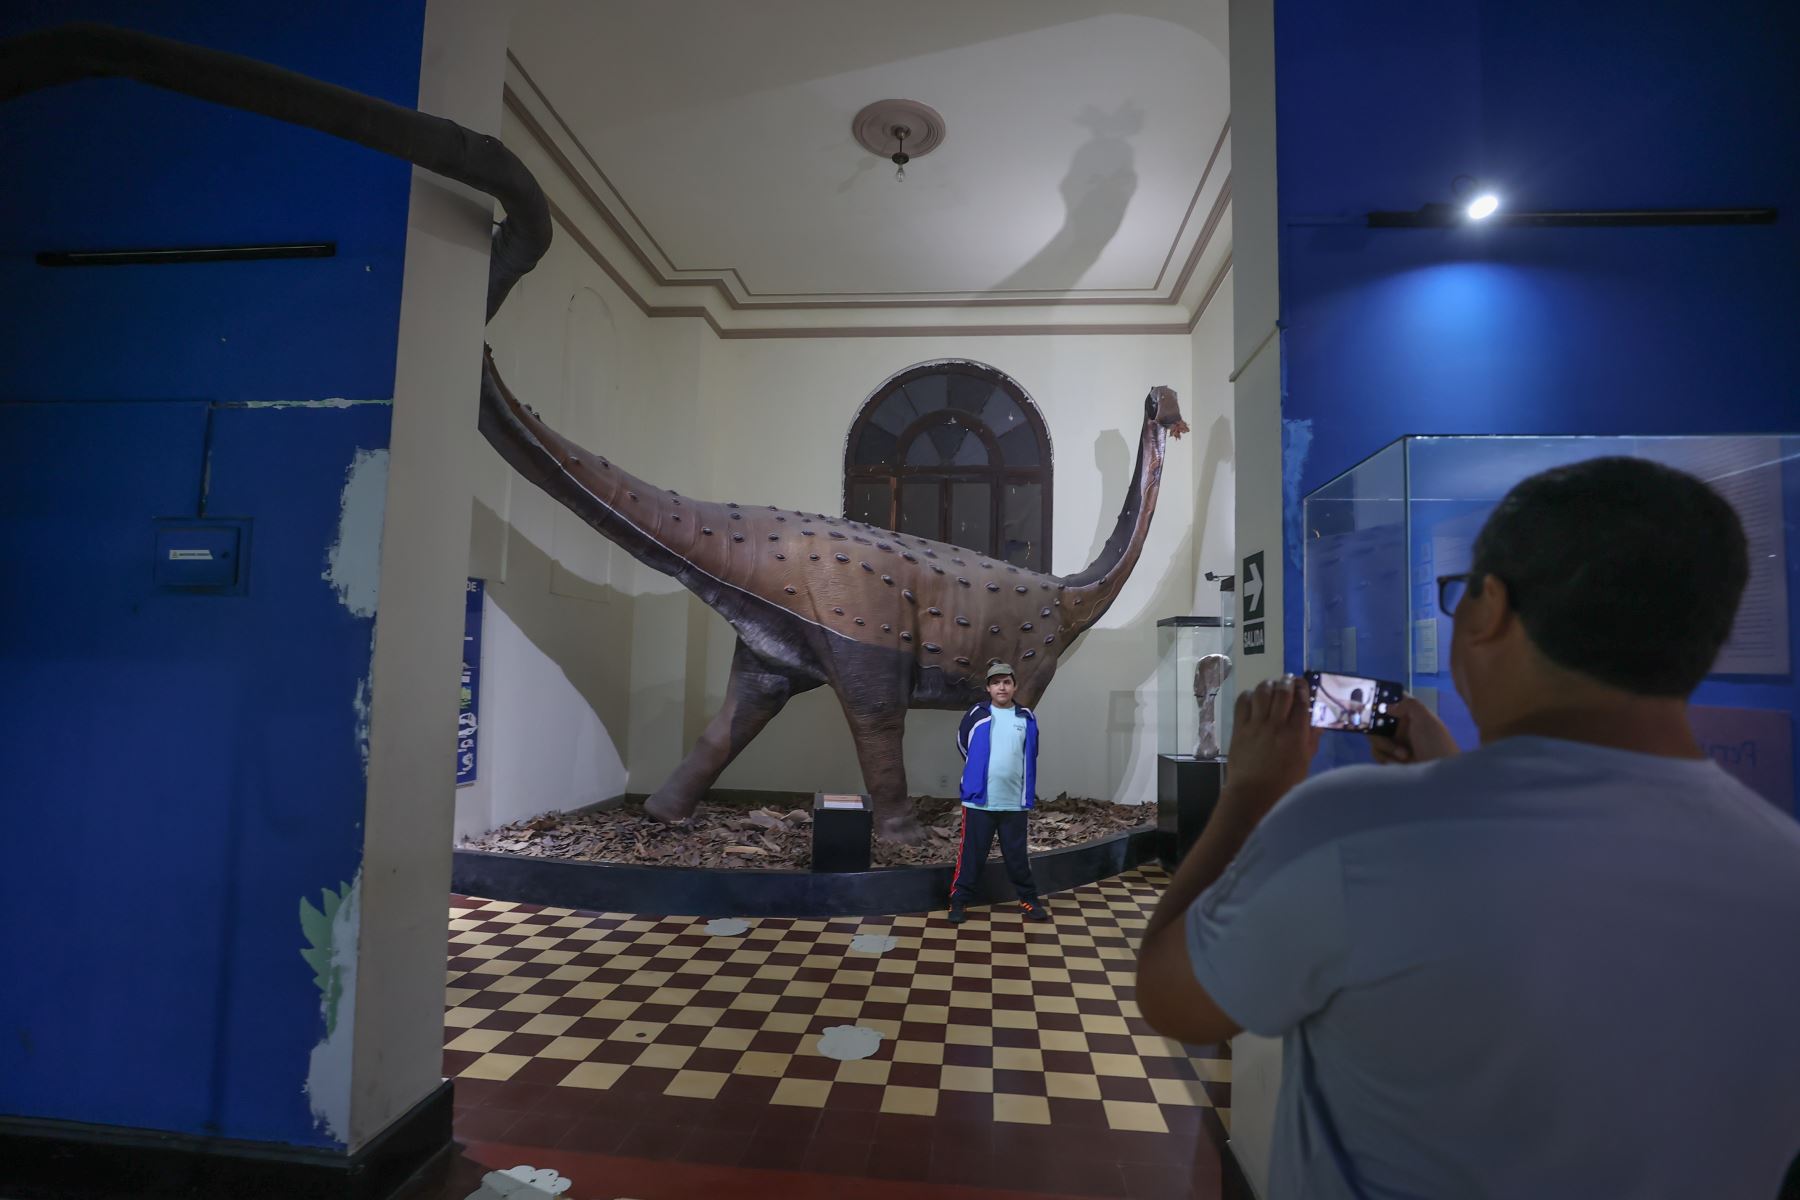 El Museo de Historia Natural, cuenta con varias salas de exhibiciones, ofreciendo al público un panorama general de la diversidad de formas de vida y gea del Perú, tanto actuales como pasadas. Foto:ANDINA/Andrés Valle